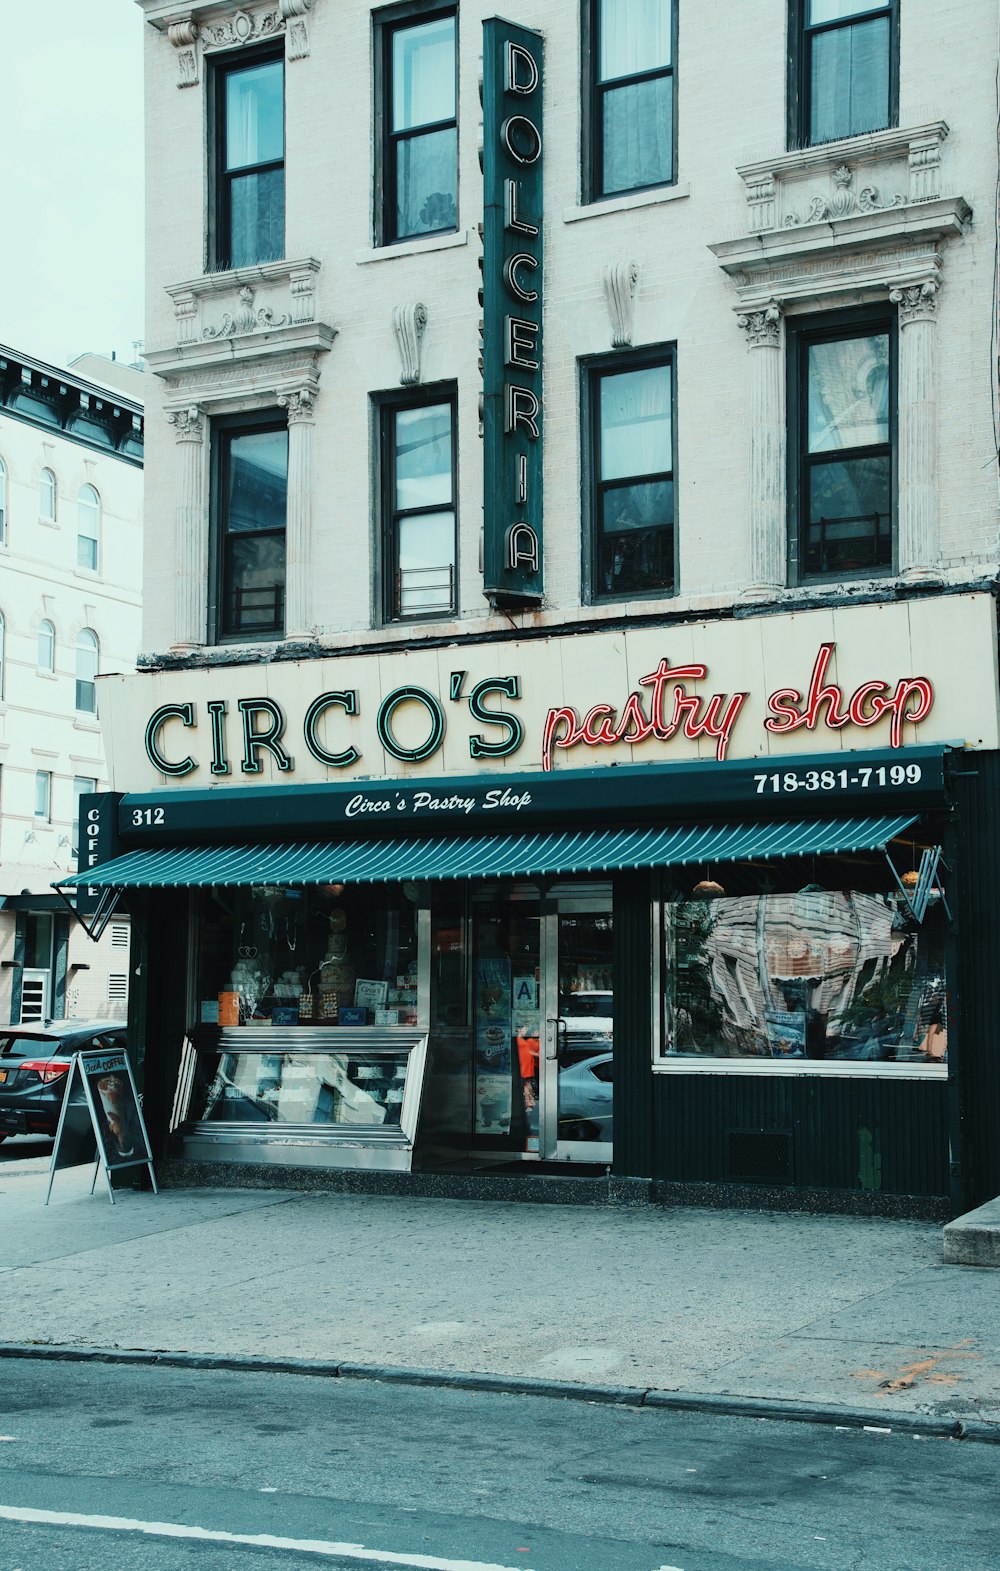 Circo's Pastry Shop store facade